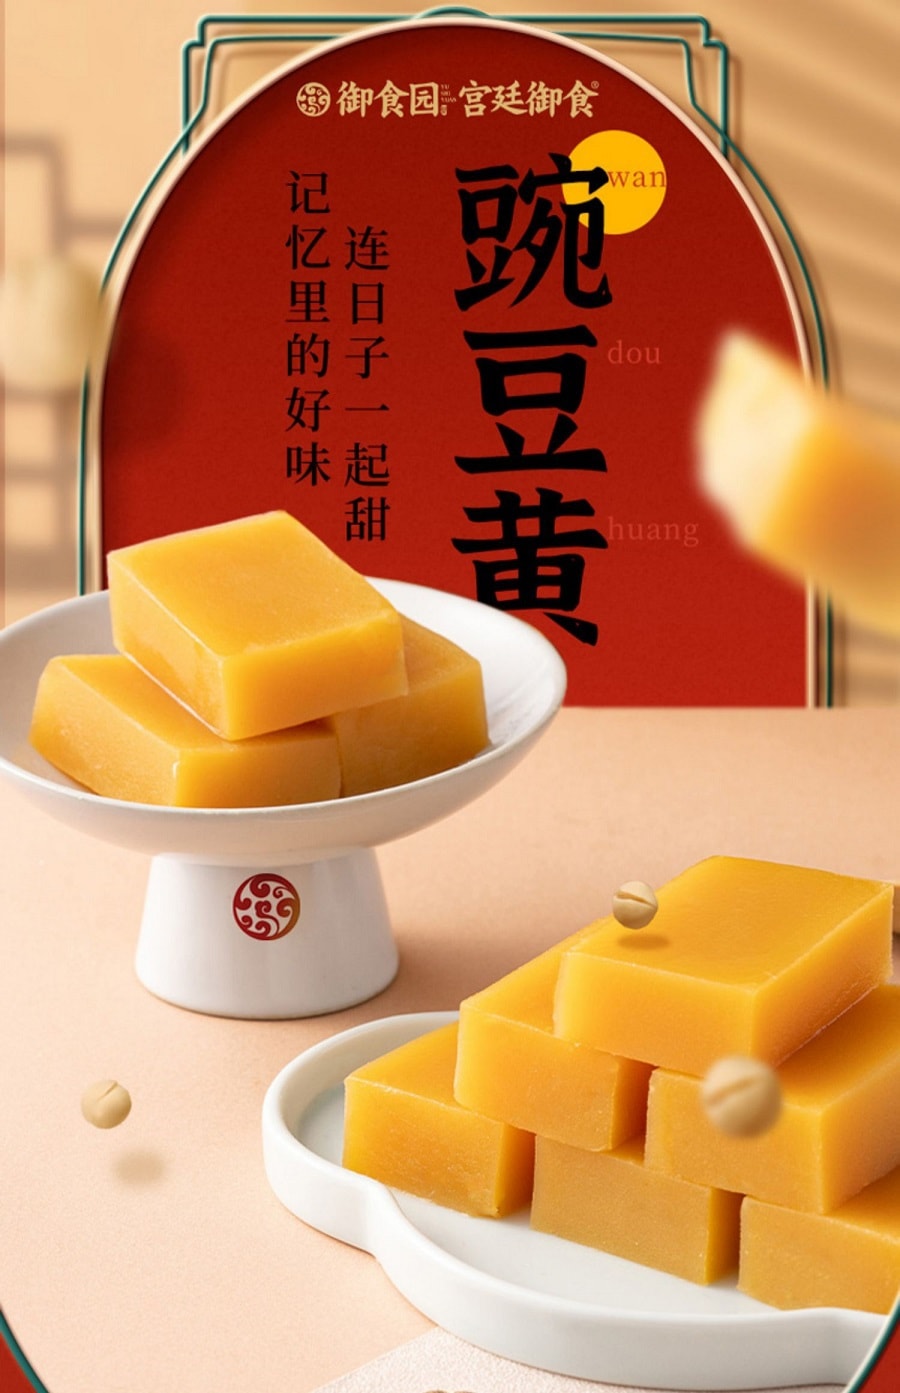 禦食園 傳統老北京風味 豌豆黃 新鮮短保 170克 (菊花蓮子綠豆栗子 隨機3種口味混合裝) 青團